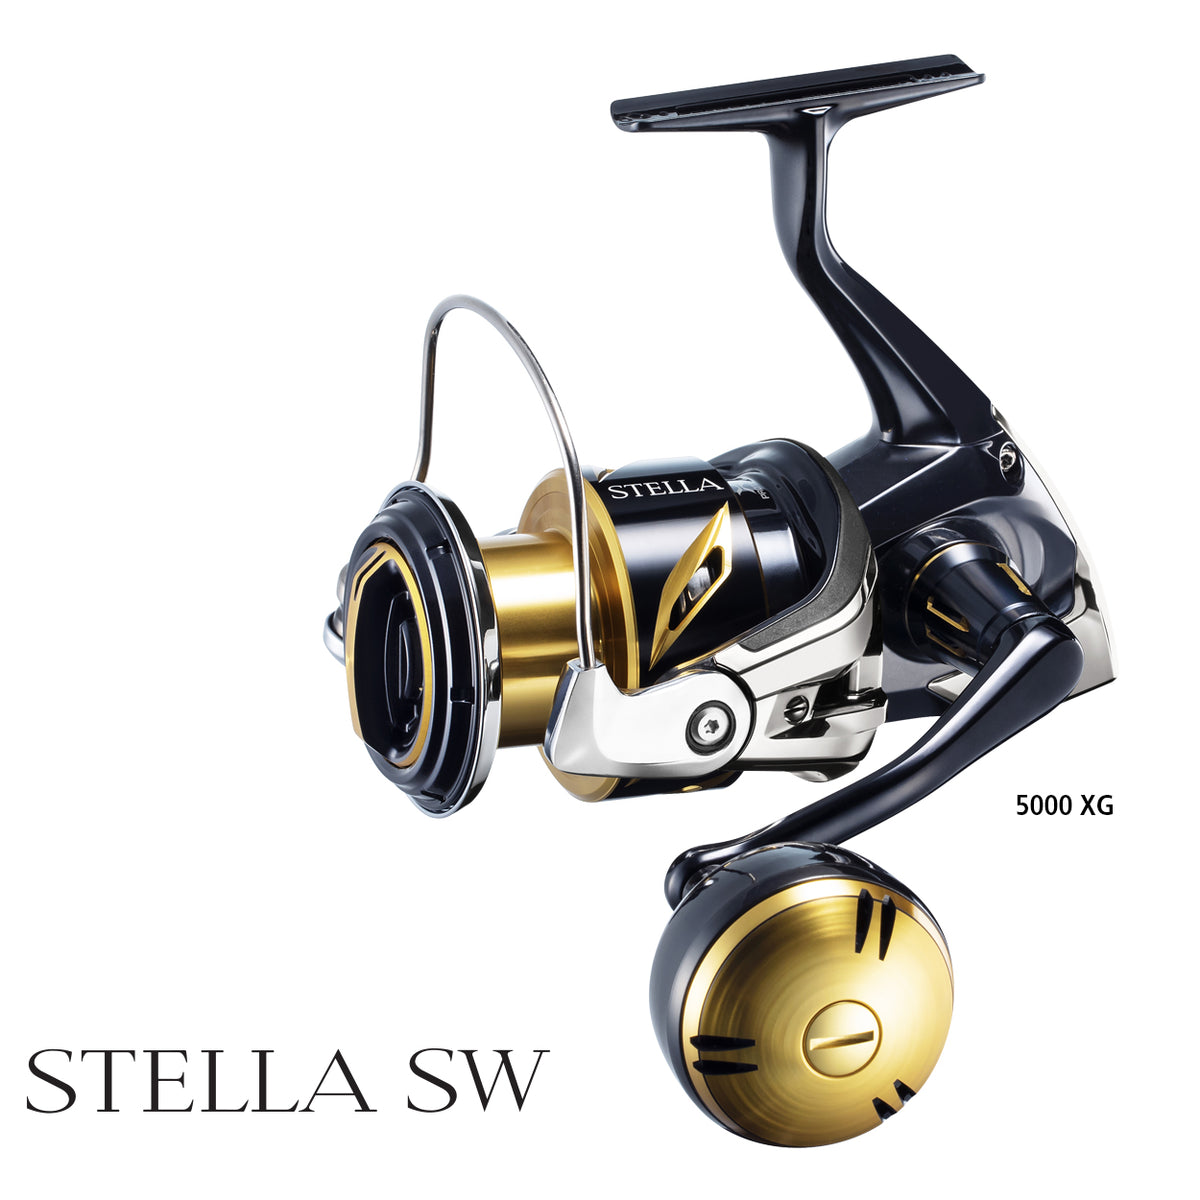 22 Shimano Stella SW SPINNING FISHING REEL